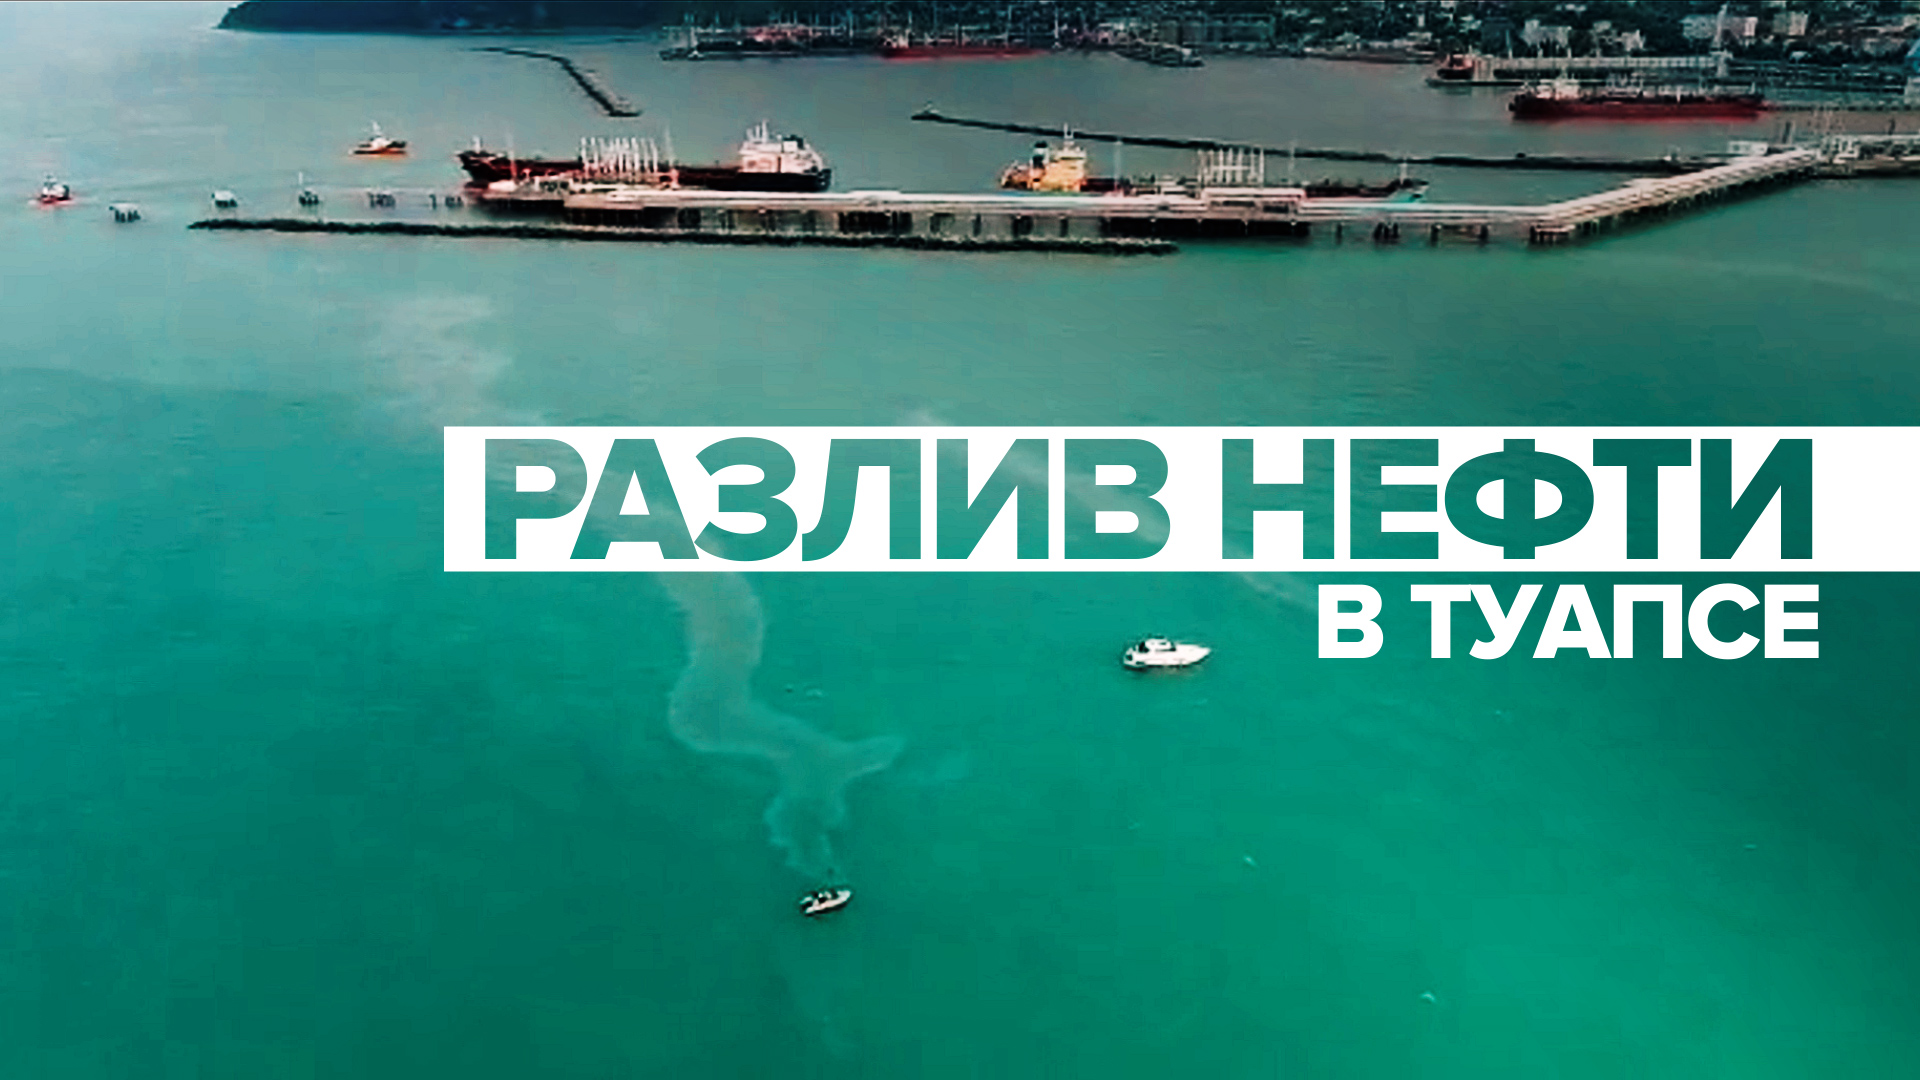 Беспилотник облетел место разлива нефти в акватории Чёрного моря около Туапсе